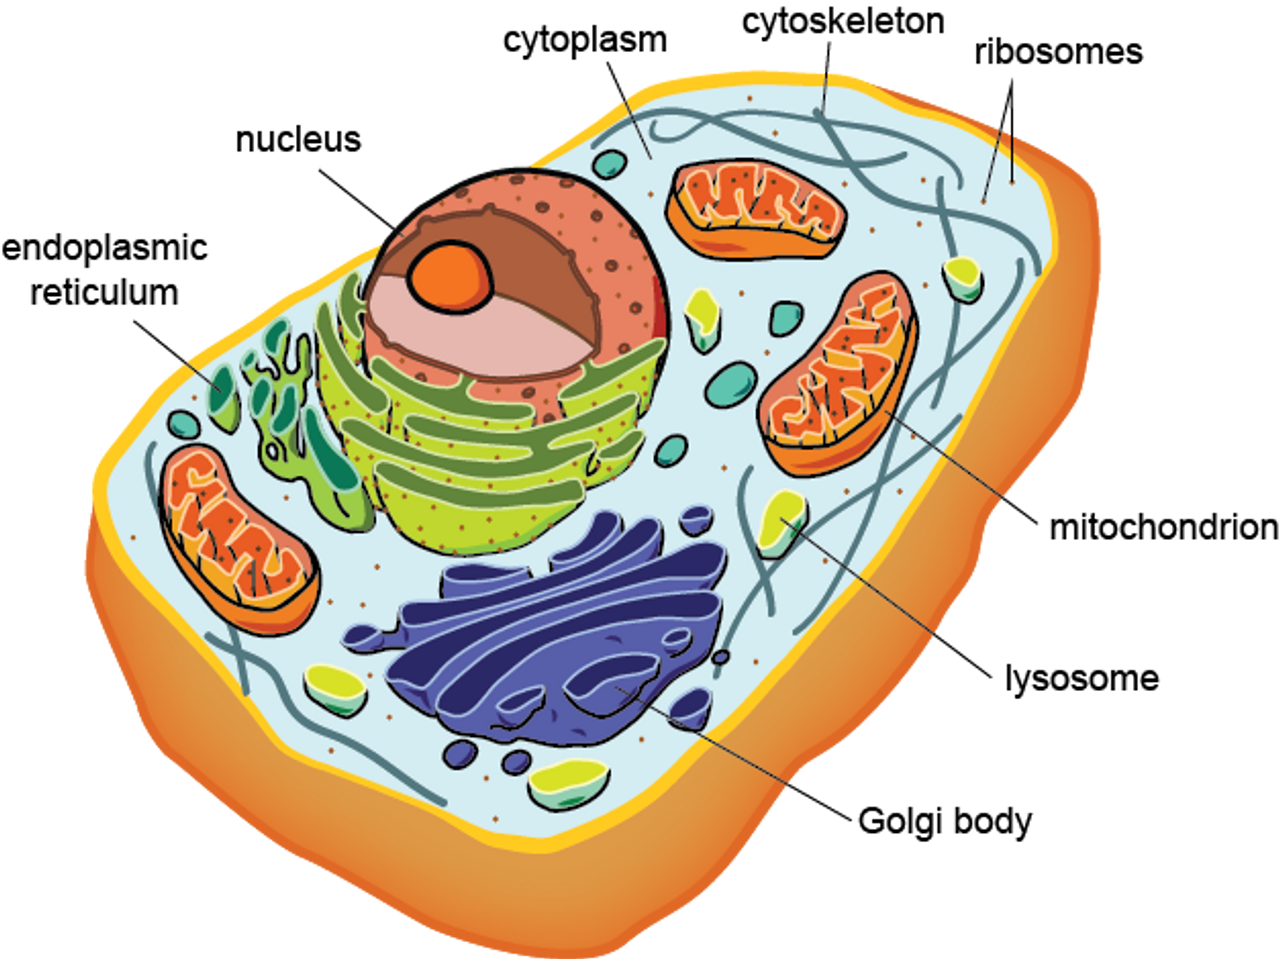 Полость в цитоплазме клетки 7